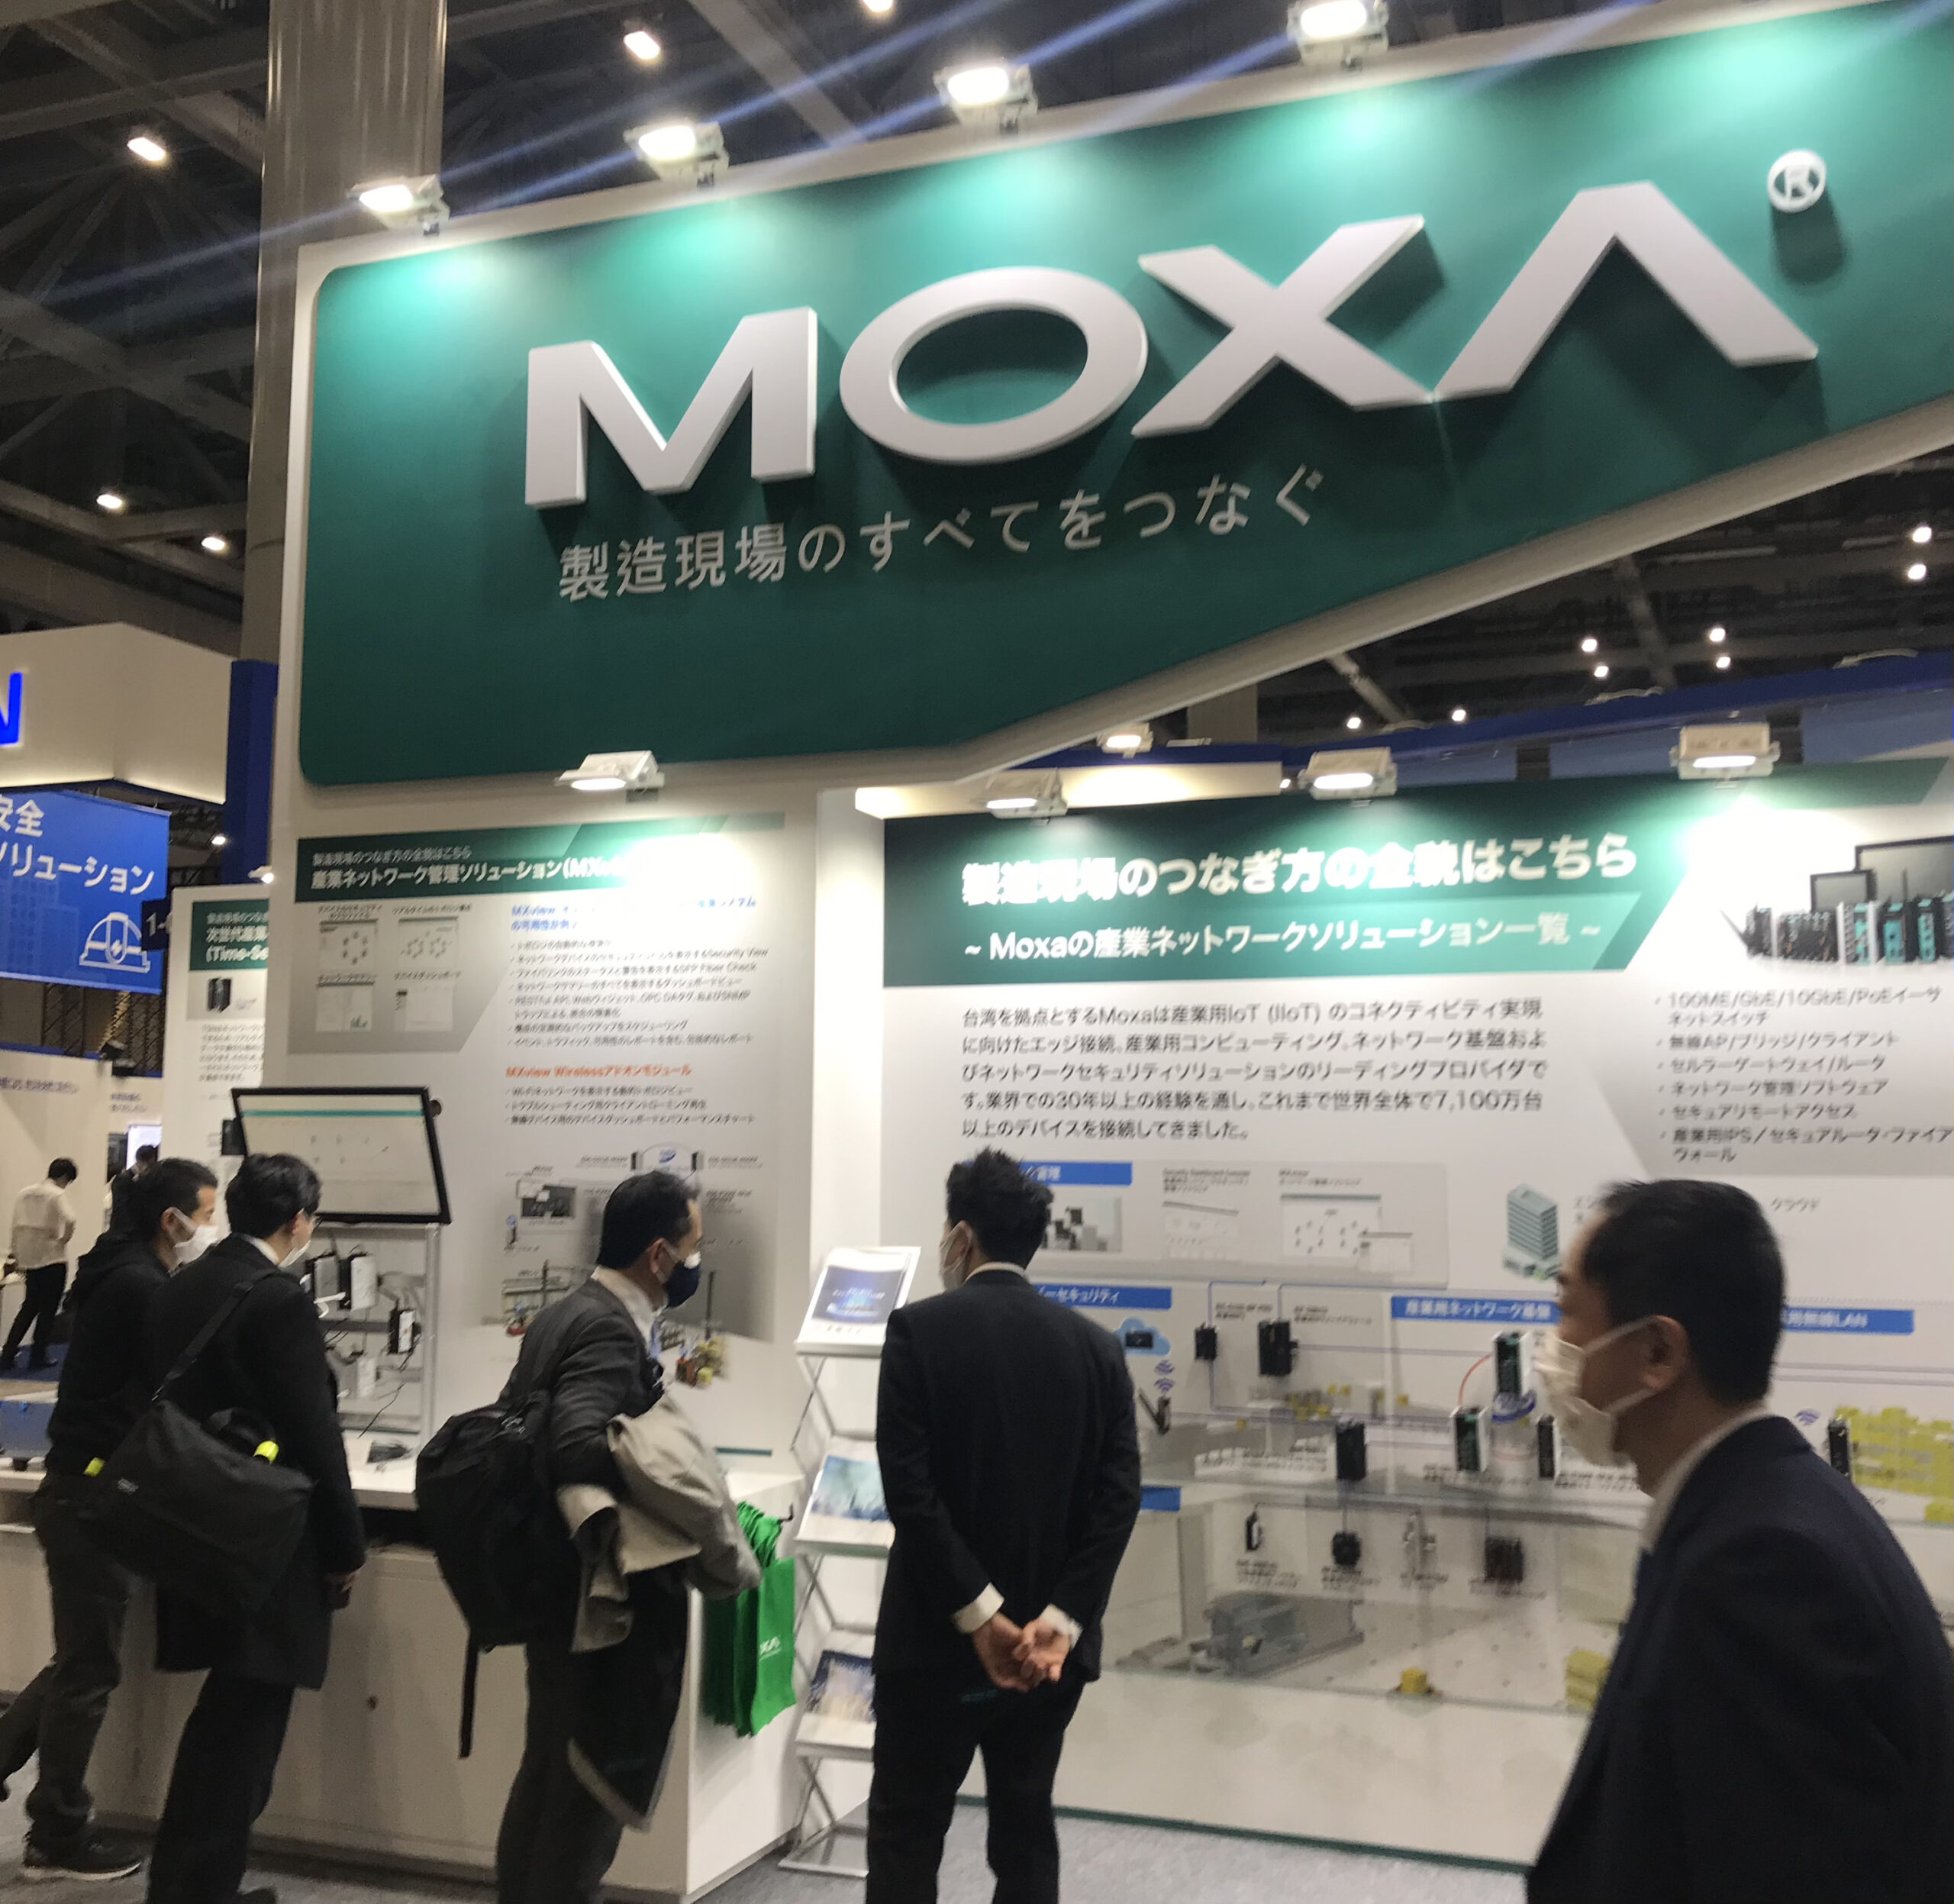 産業用ネットワーク機器メーカー「MOXA」日本市場に本腰 IIoT、DX需要獲得目指す